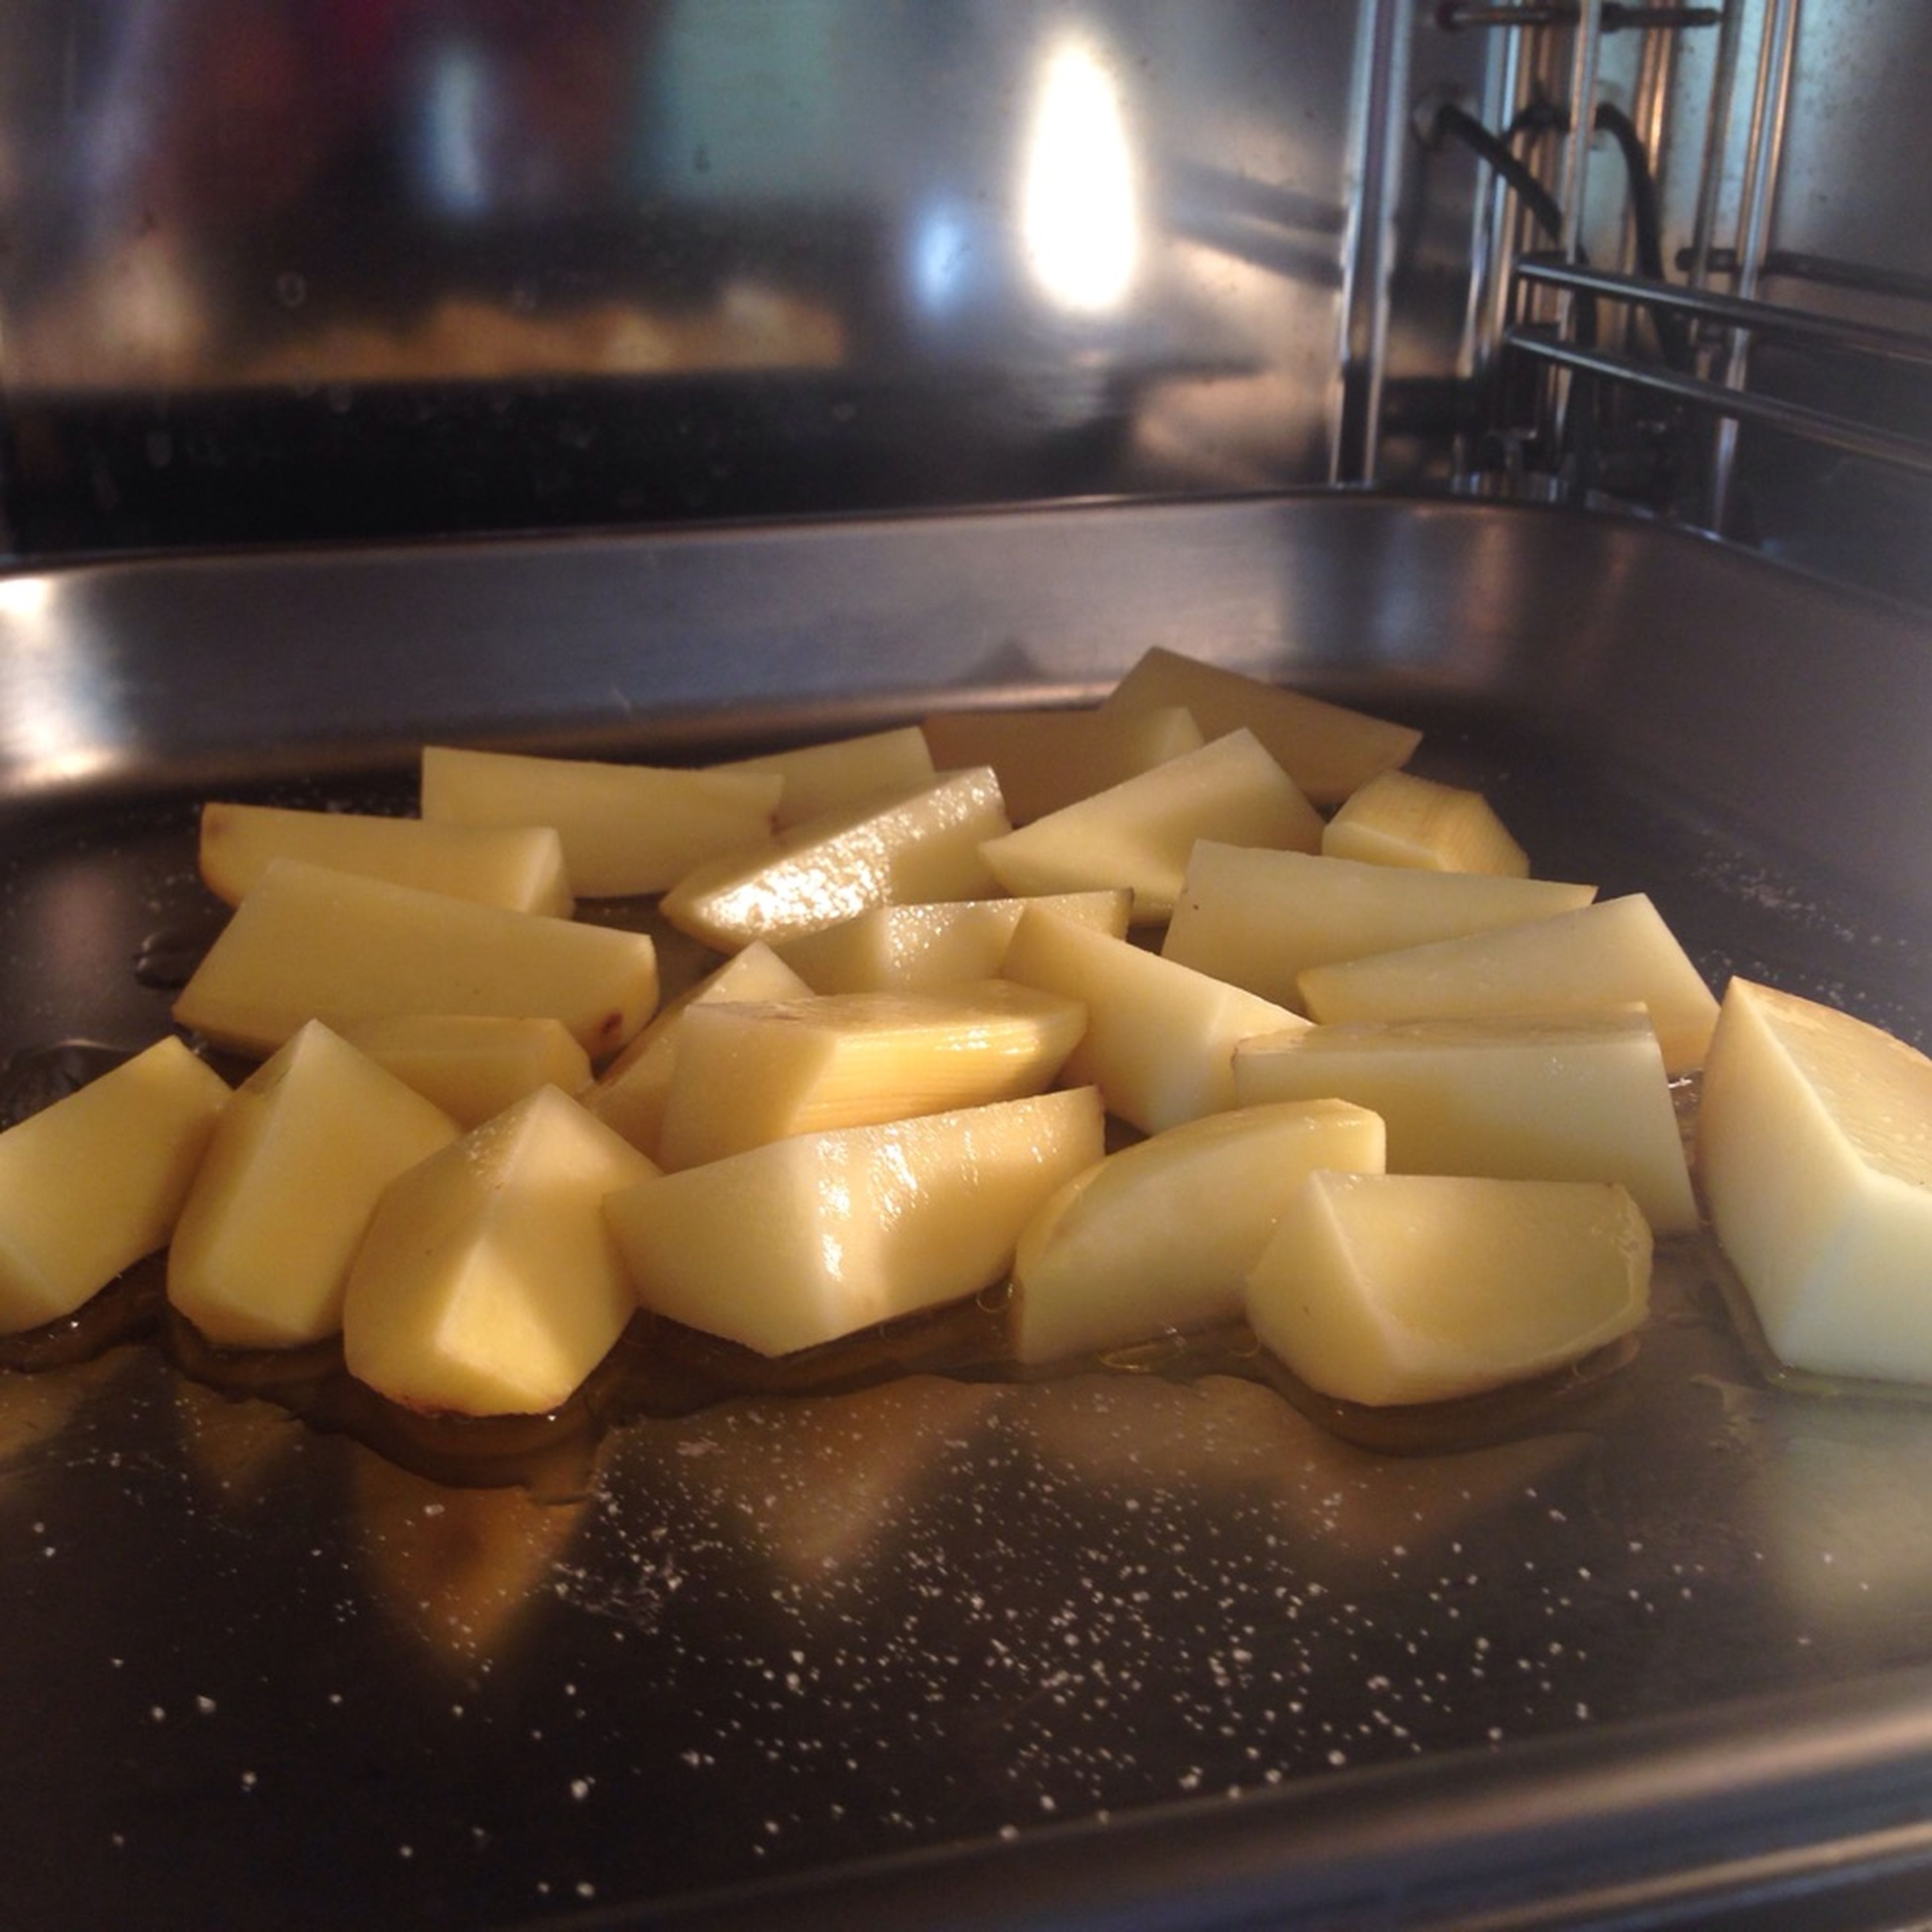 Die Kartoffeln auf ein Backblech geben und mit dem Olivenöl und dem Bier übergießen und salzen. Dann im Backofen bei 150°C für ca. 20 Min. backen, bis sie goldbraun sind.